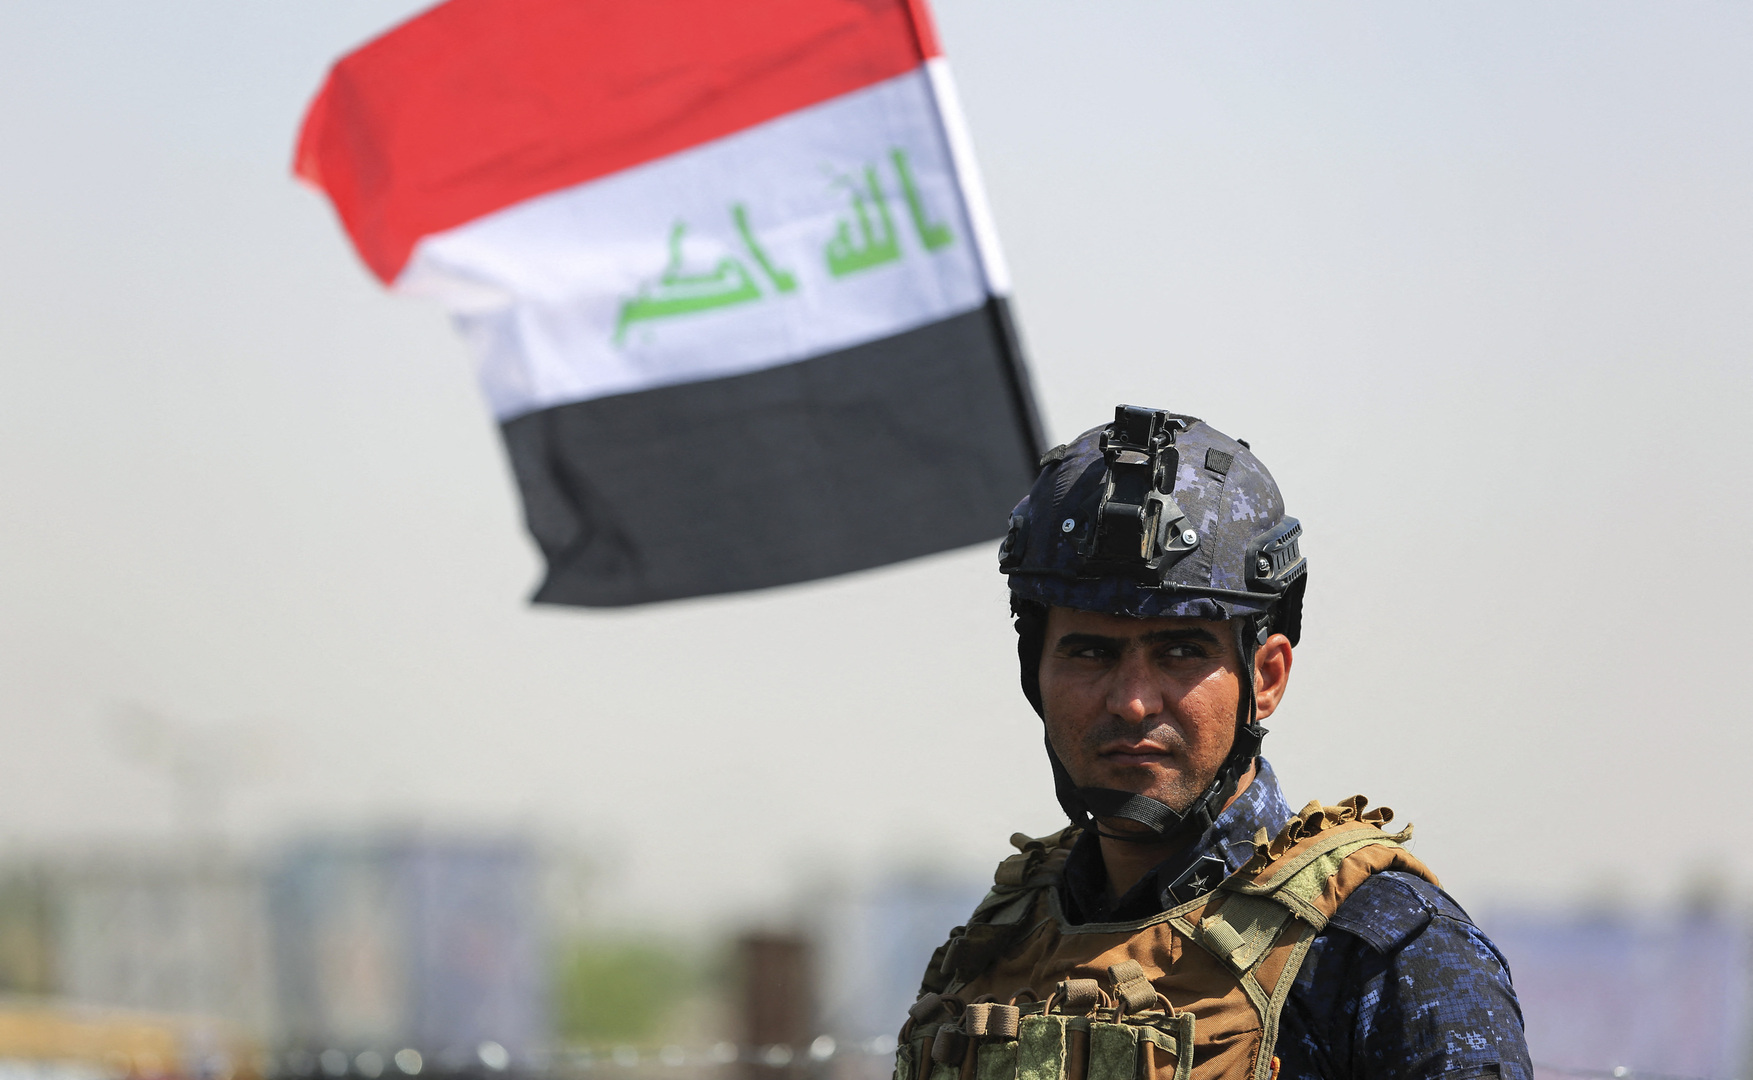 العراق..أوامر قبض على 4 مسؤولين في حكومة الكاظمي لتسهيلهم سرقة 